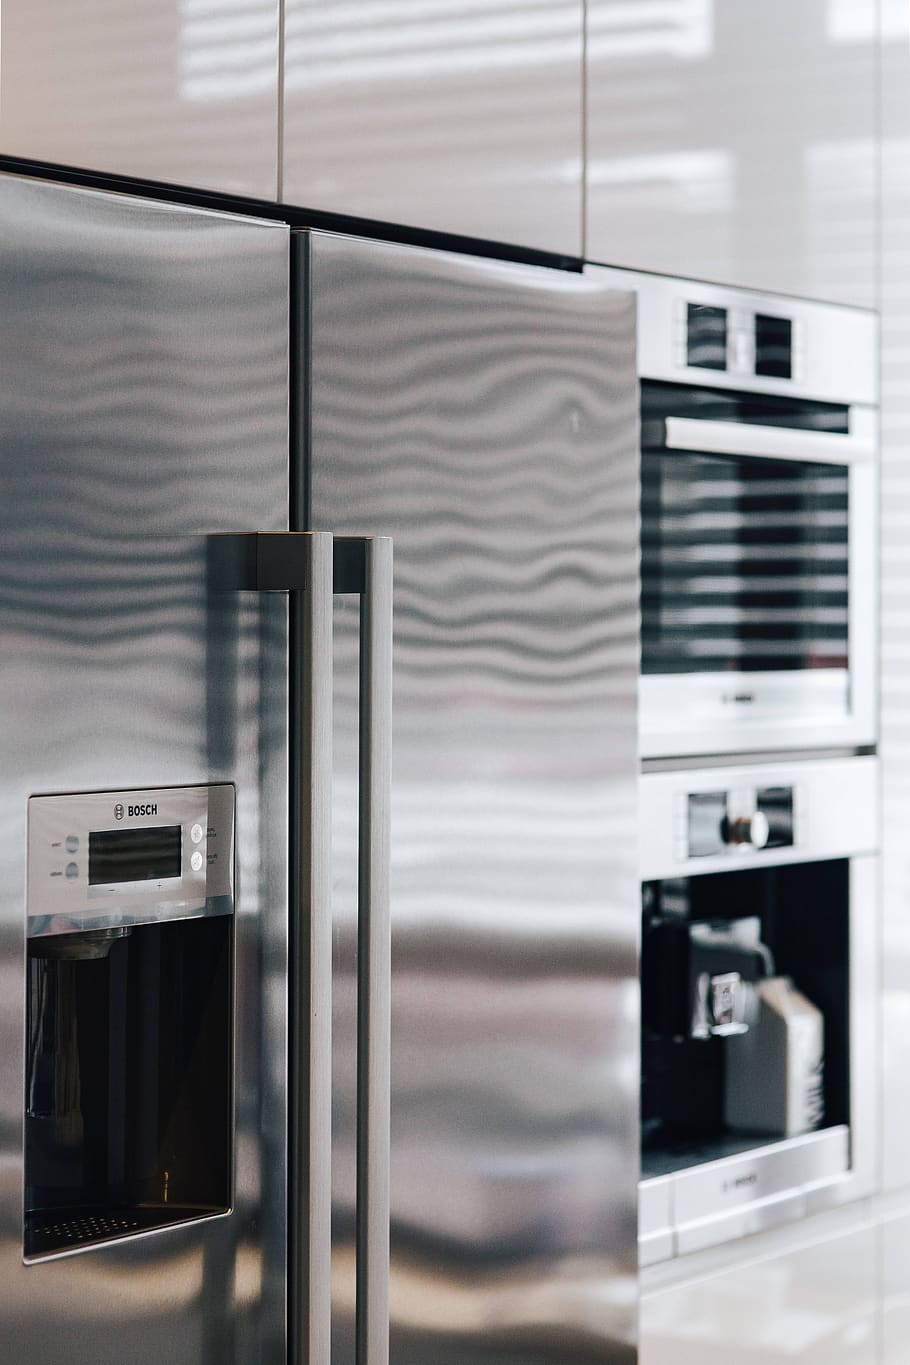 gris, blanco, moderno, contemporáneo, estilo, diseño, cocina, metálico, horno, refrigerador